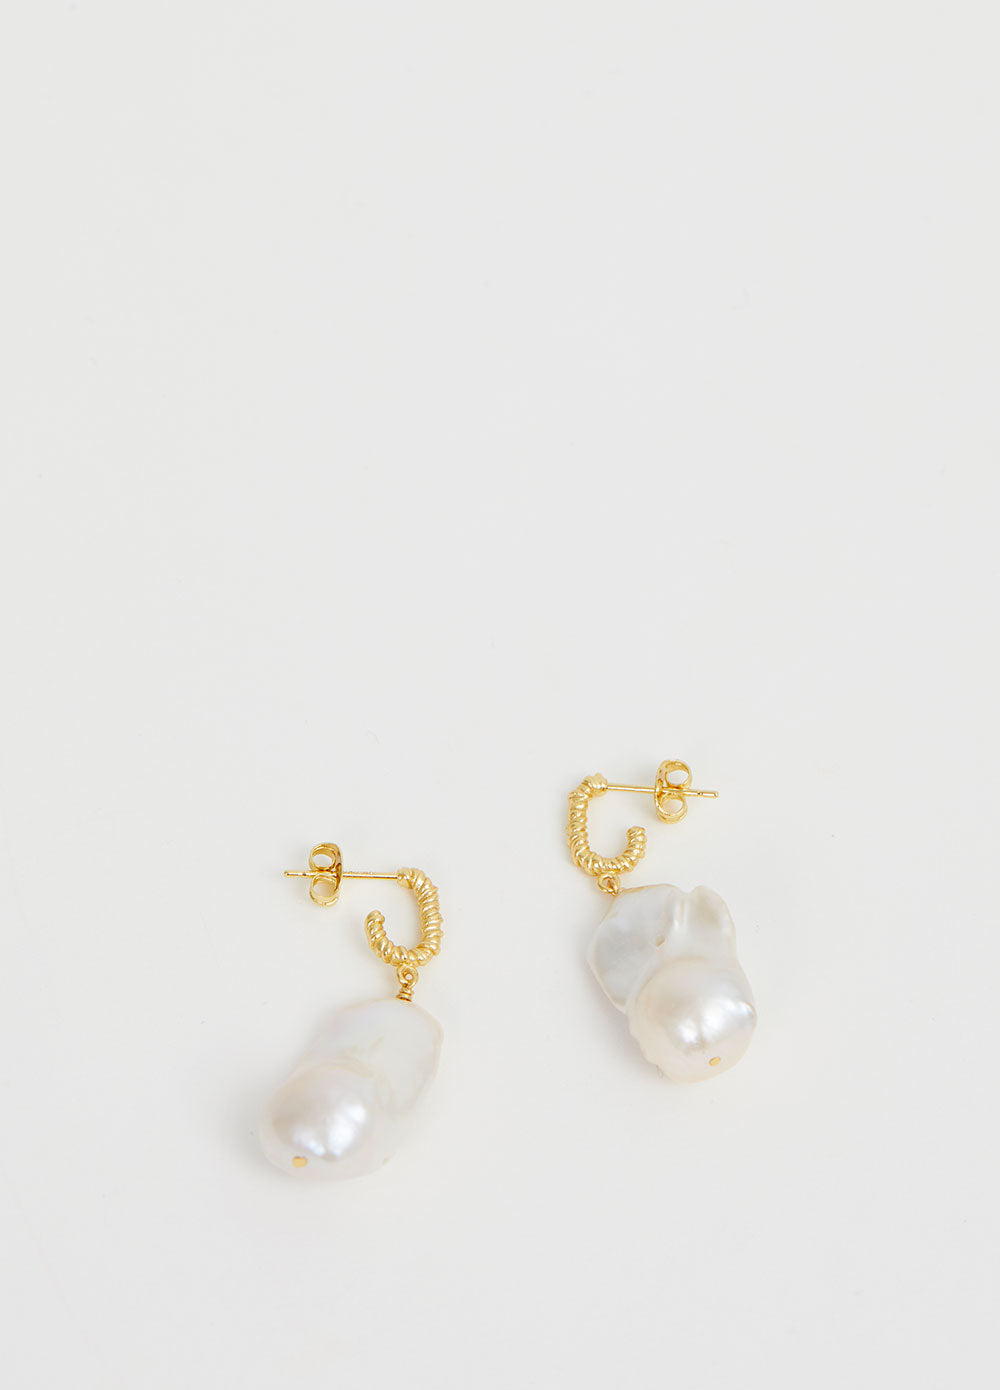 Seaweed Pearl Earrings